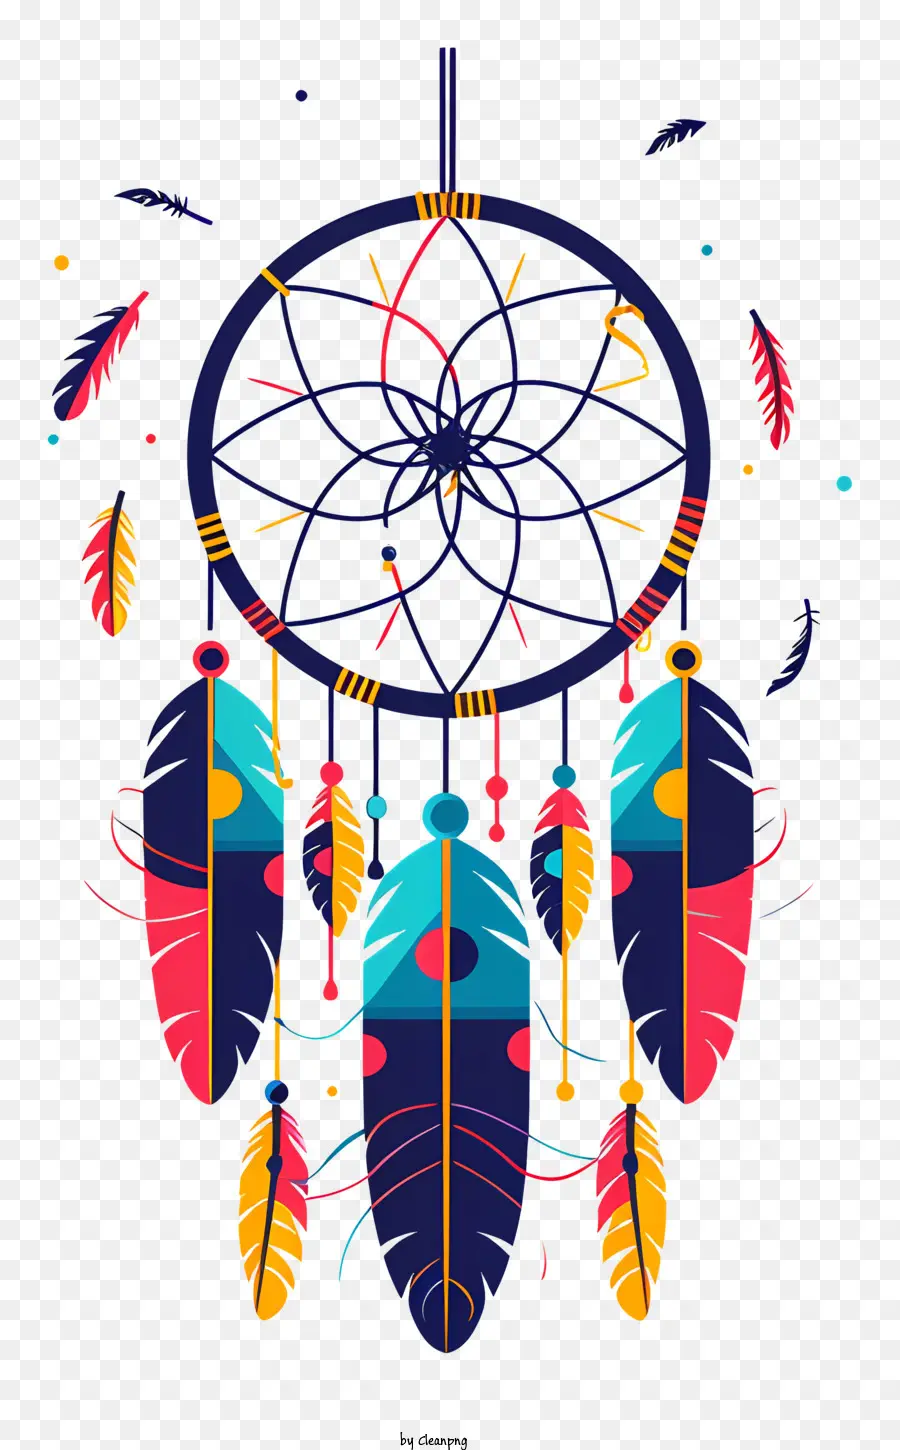 cacciatore di sogni - Catcher da sogno colorato con piume, perline, simboleggia il filtraggio di pensieri negativi e promuove la positività